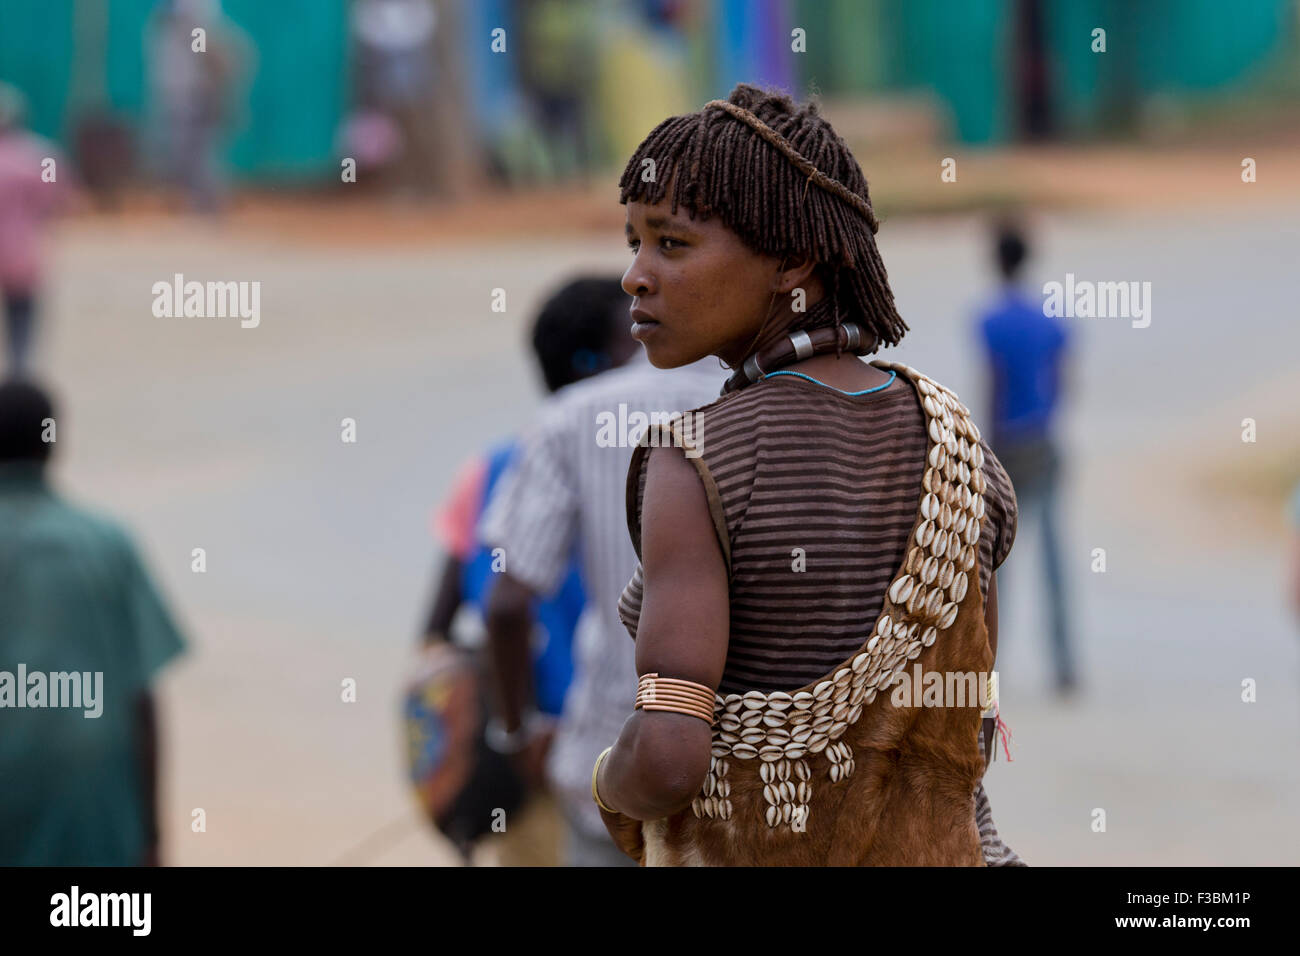 Africa, Etiopia, regione dell'Omo, Ari tribù donna fotografata al mercato del bestiame Foto Stock